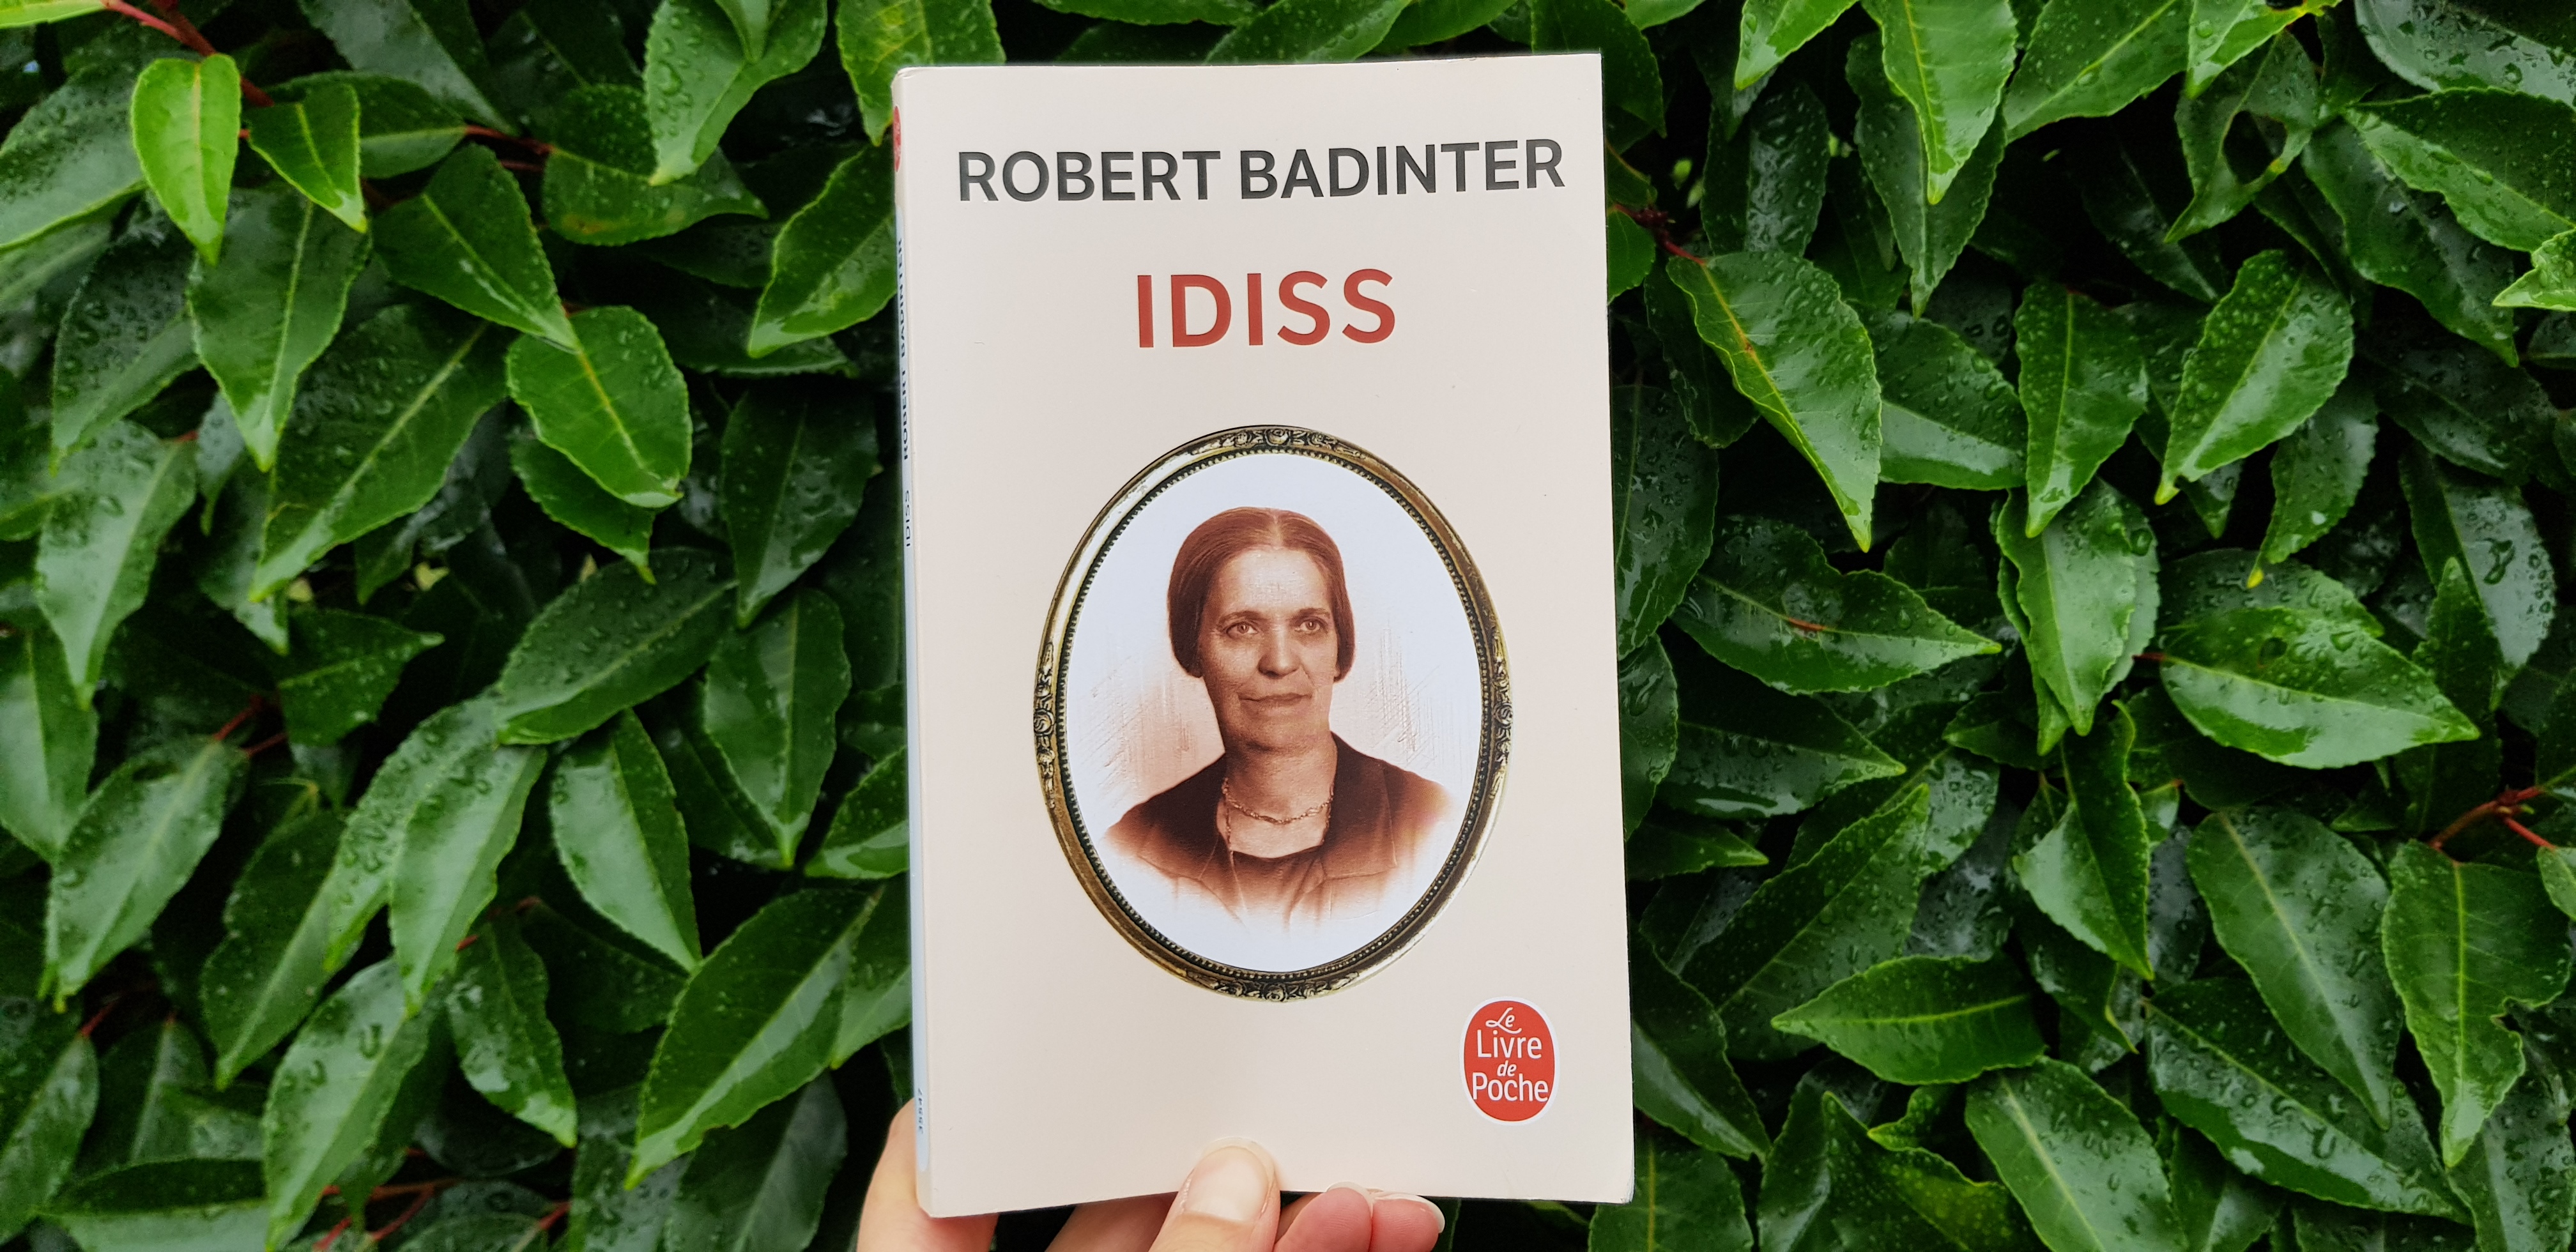 Idiss - Robert Badinter